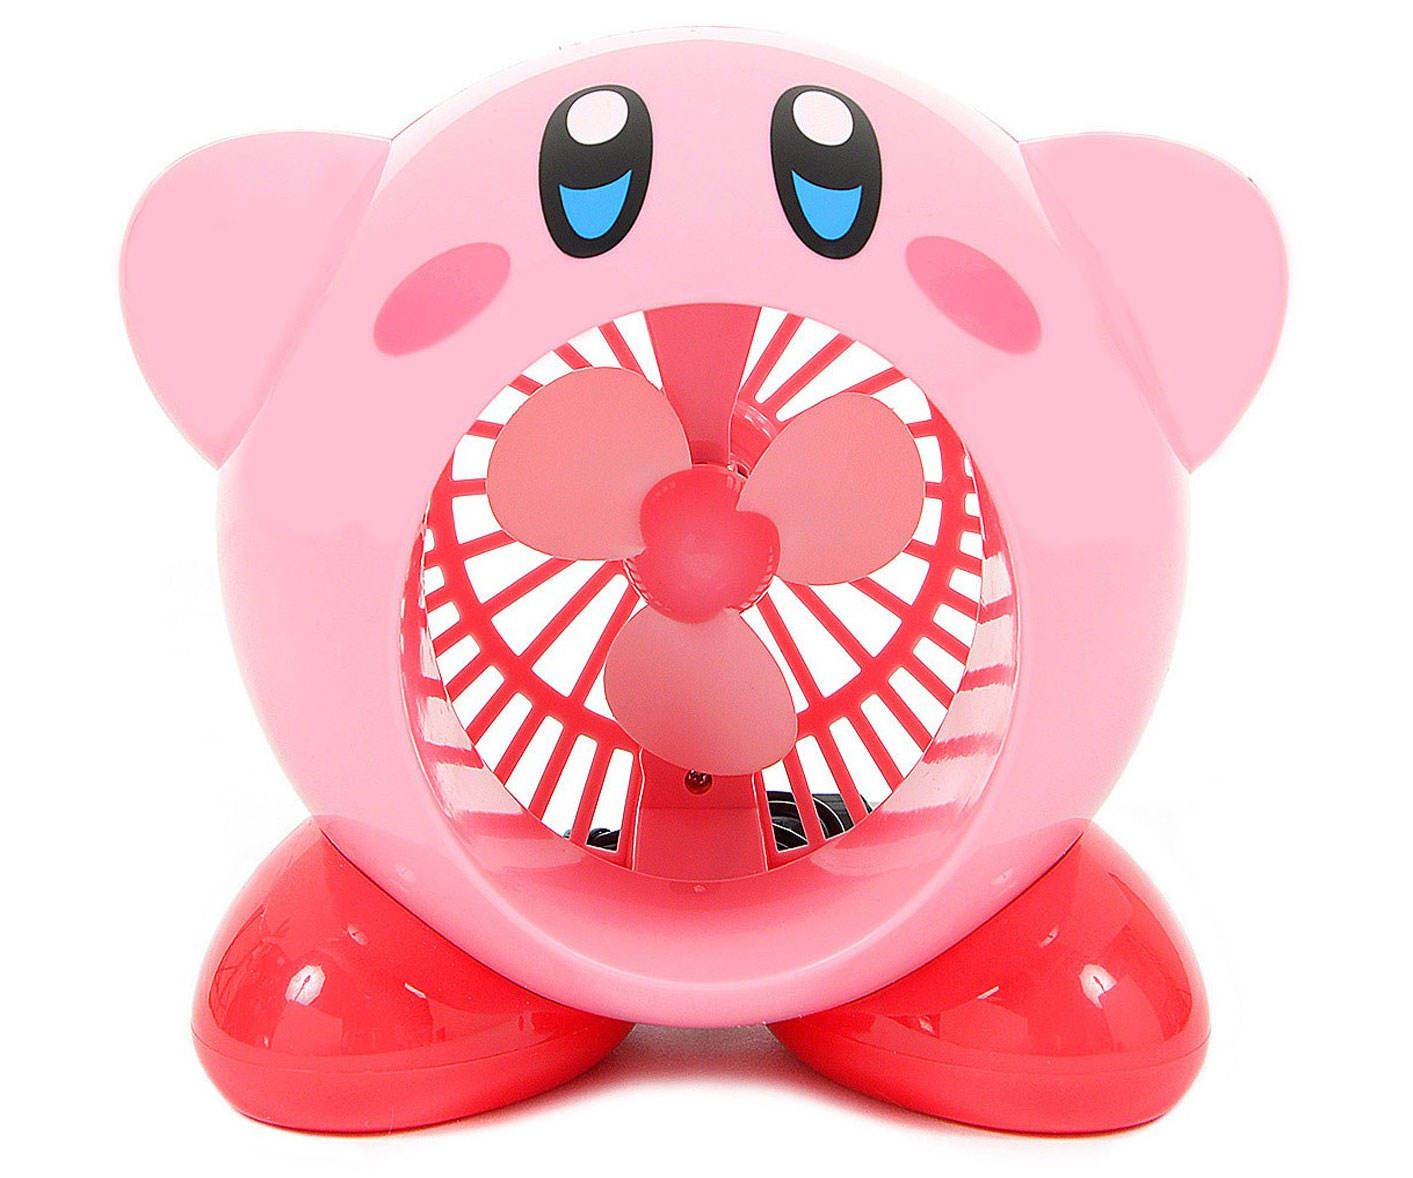 The Kirby Fan 1